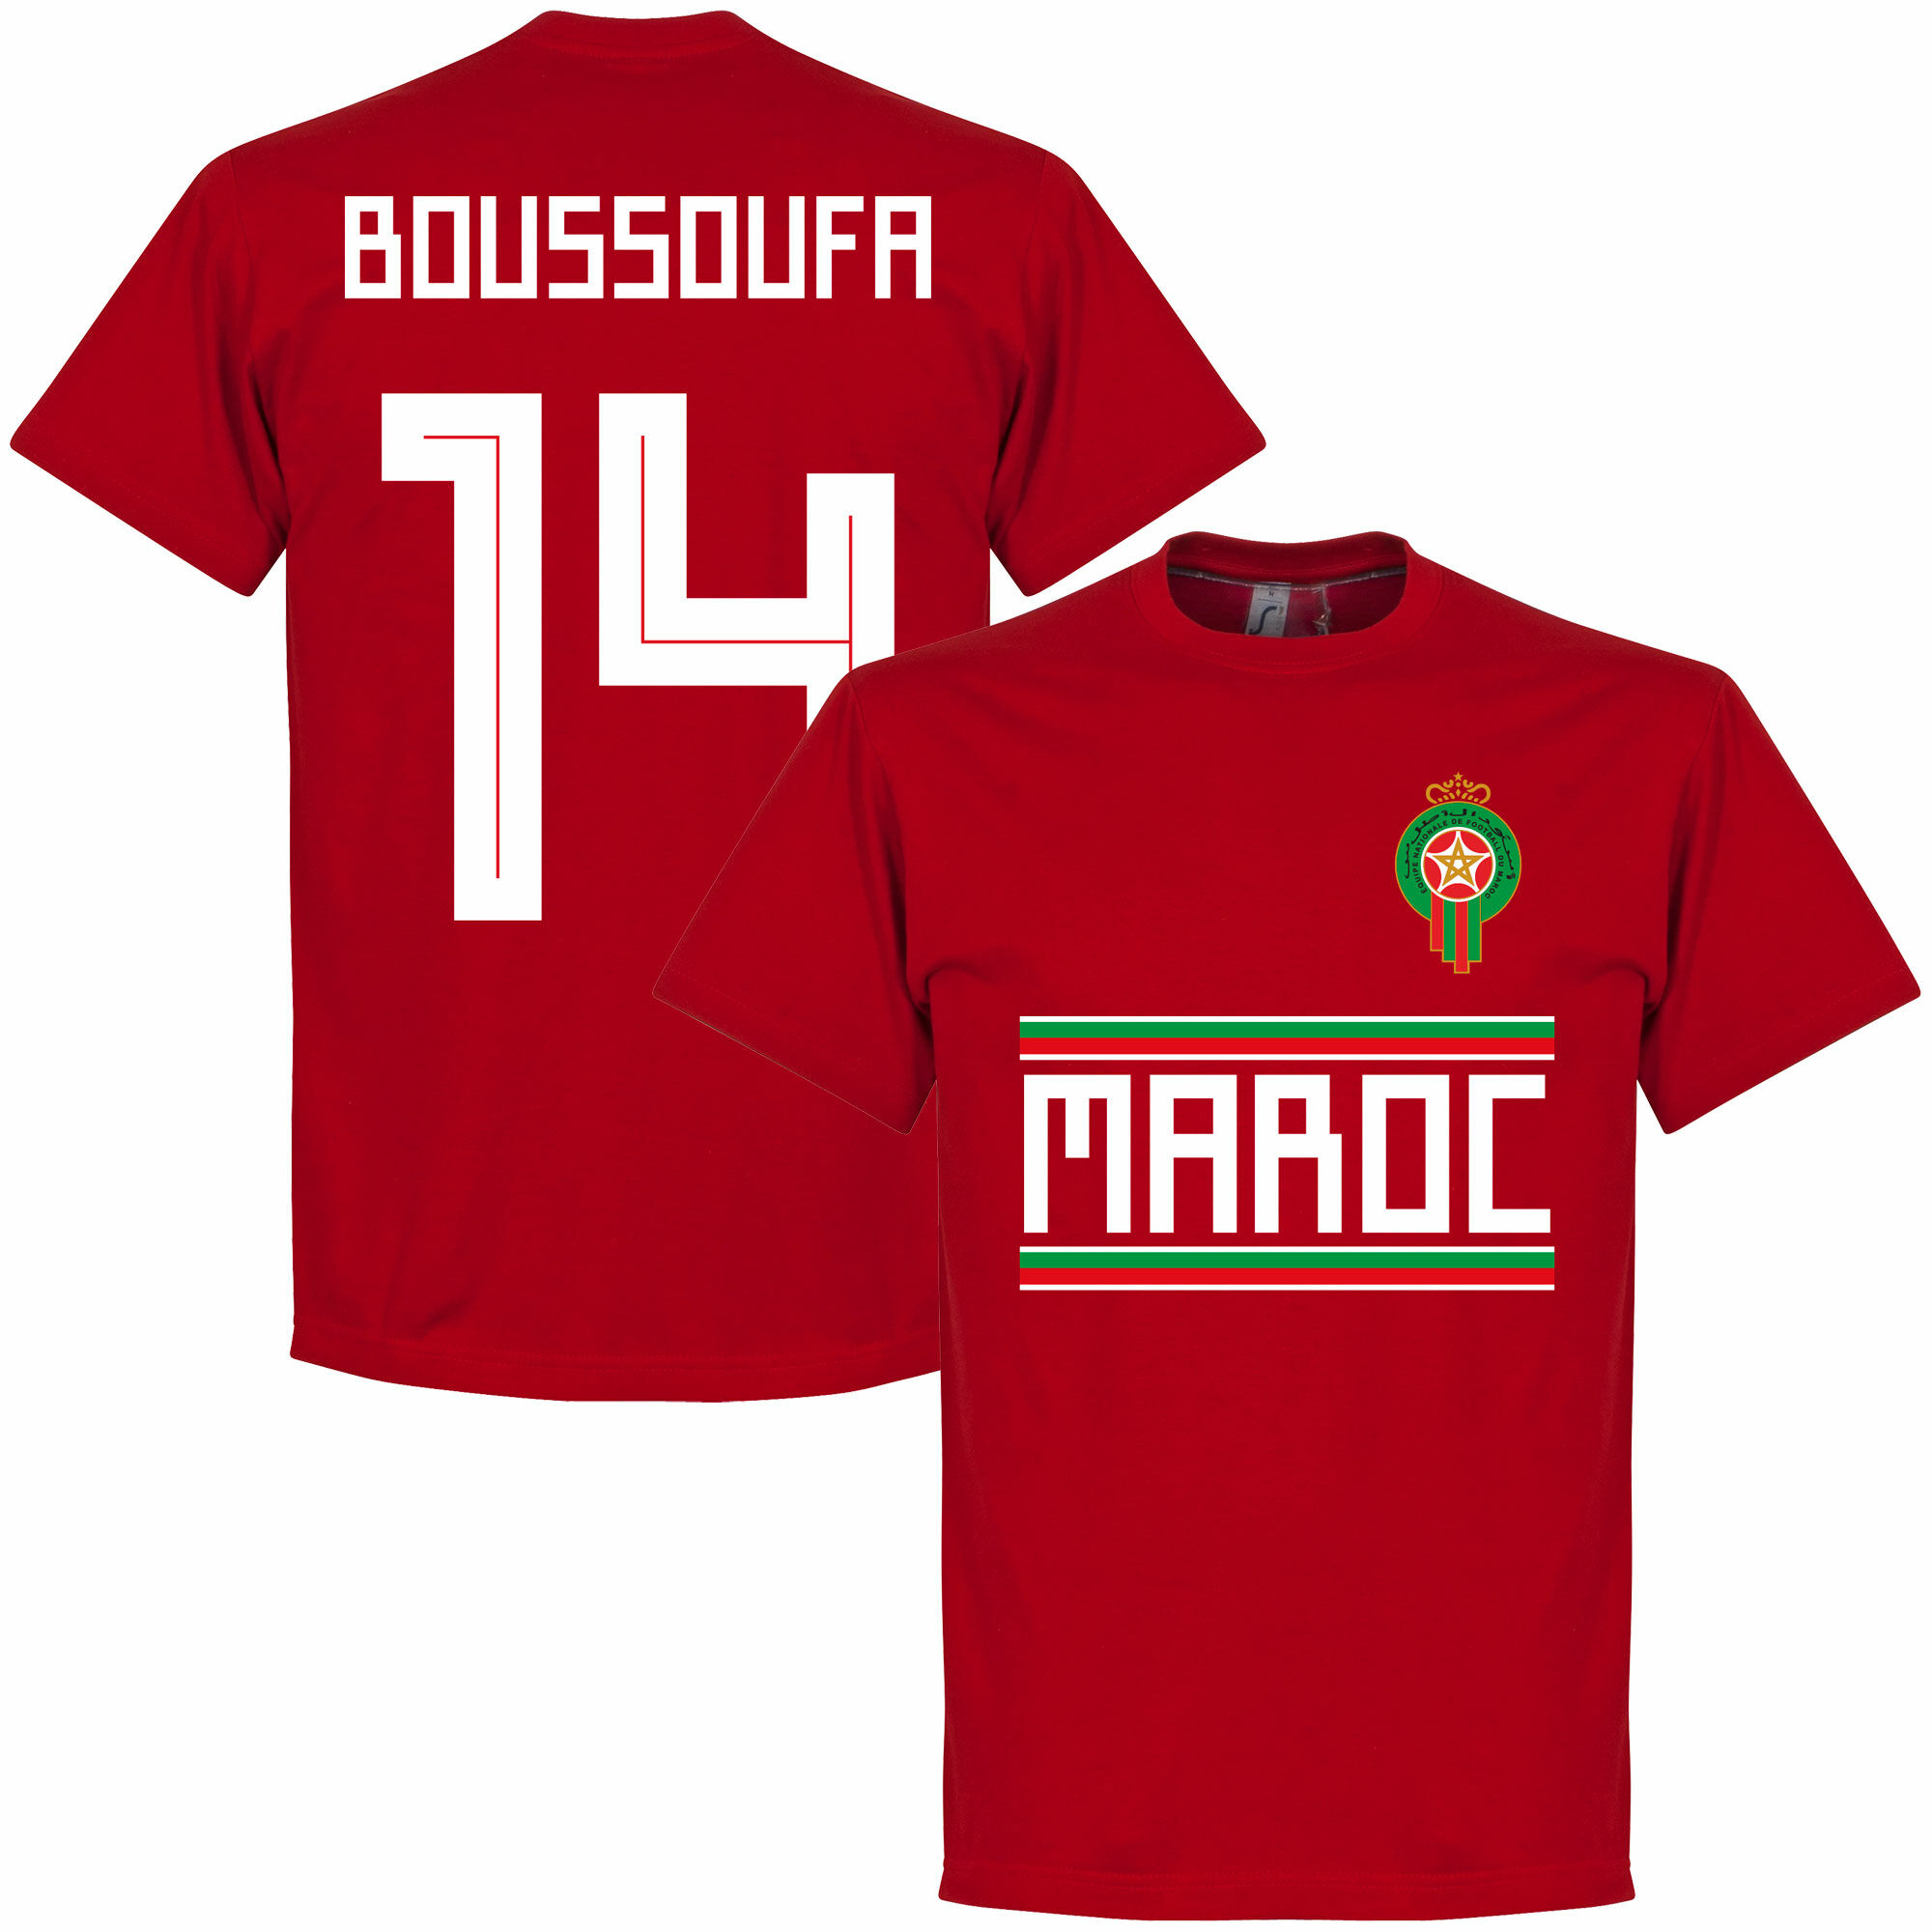 Maroko - Tričko - červené, Mbark Boussoufa, číslo 14